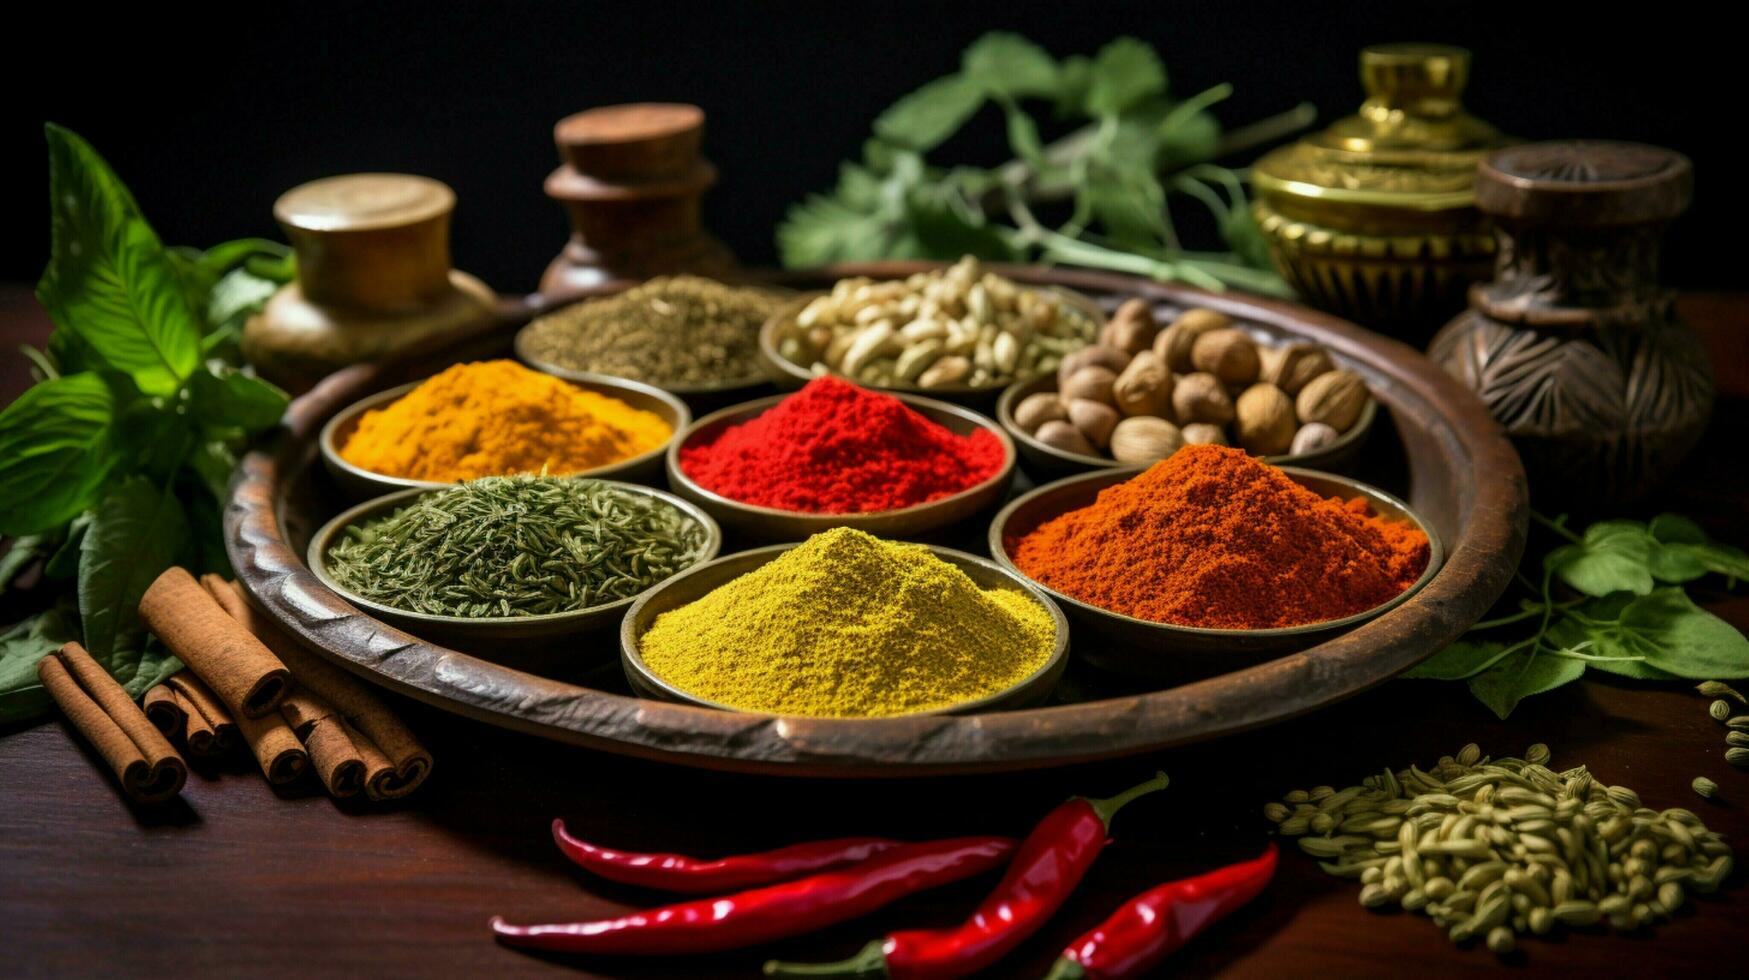 pimenter en haut votre curry avec aromatique assaisonnements photo